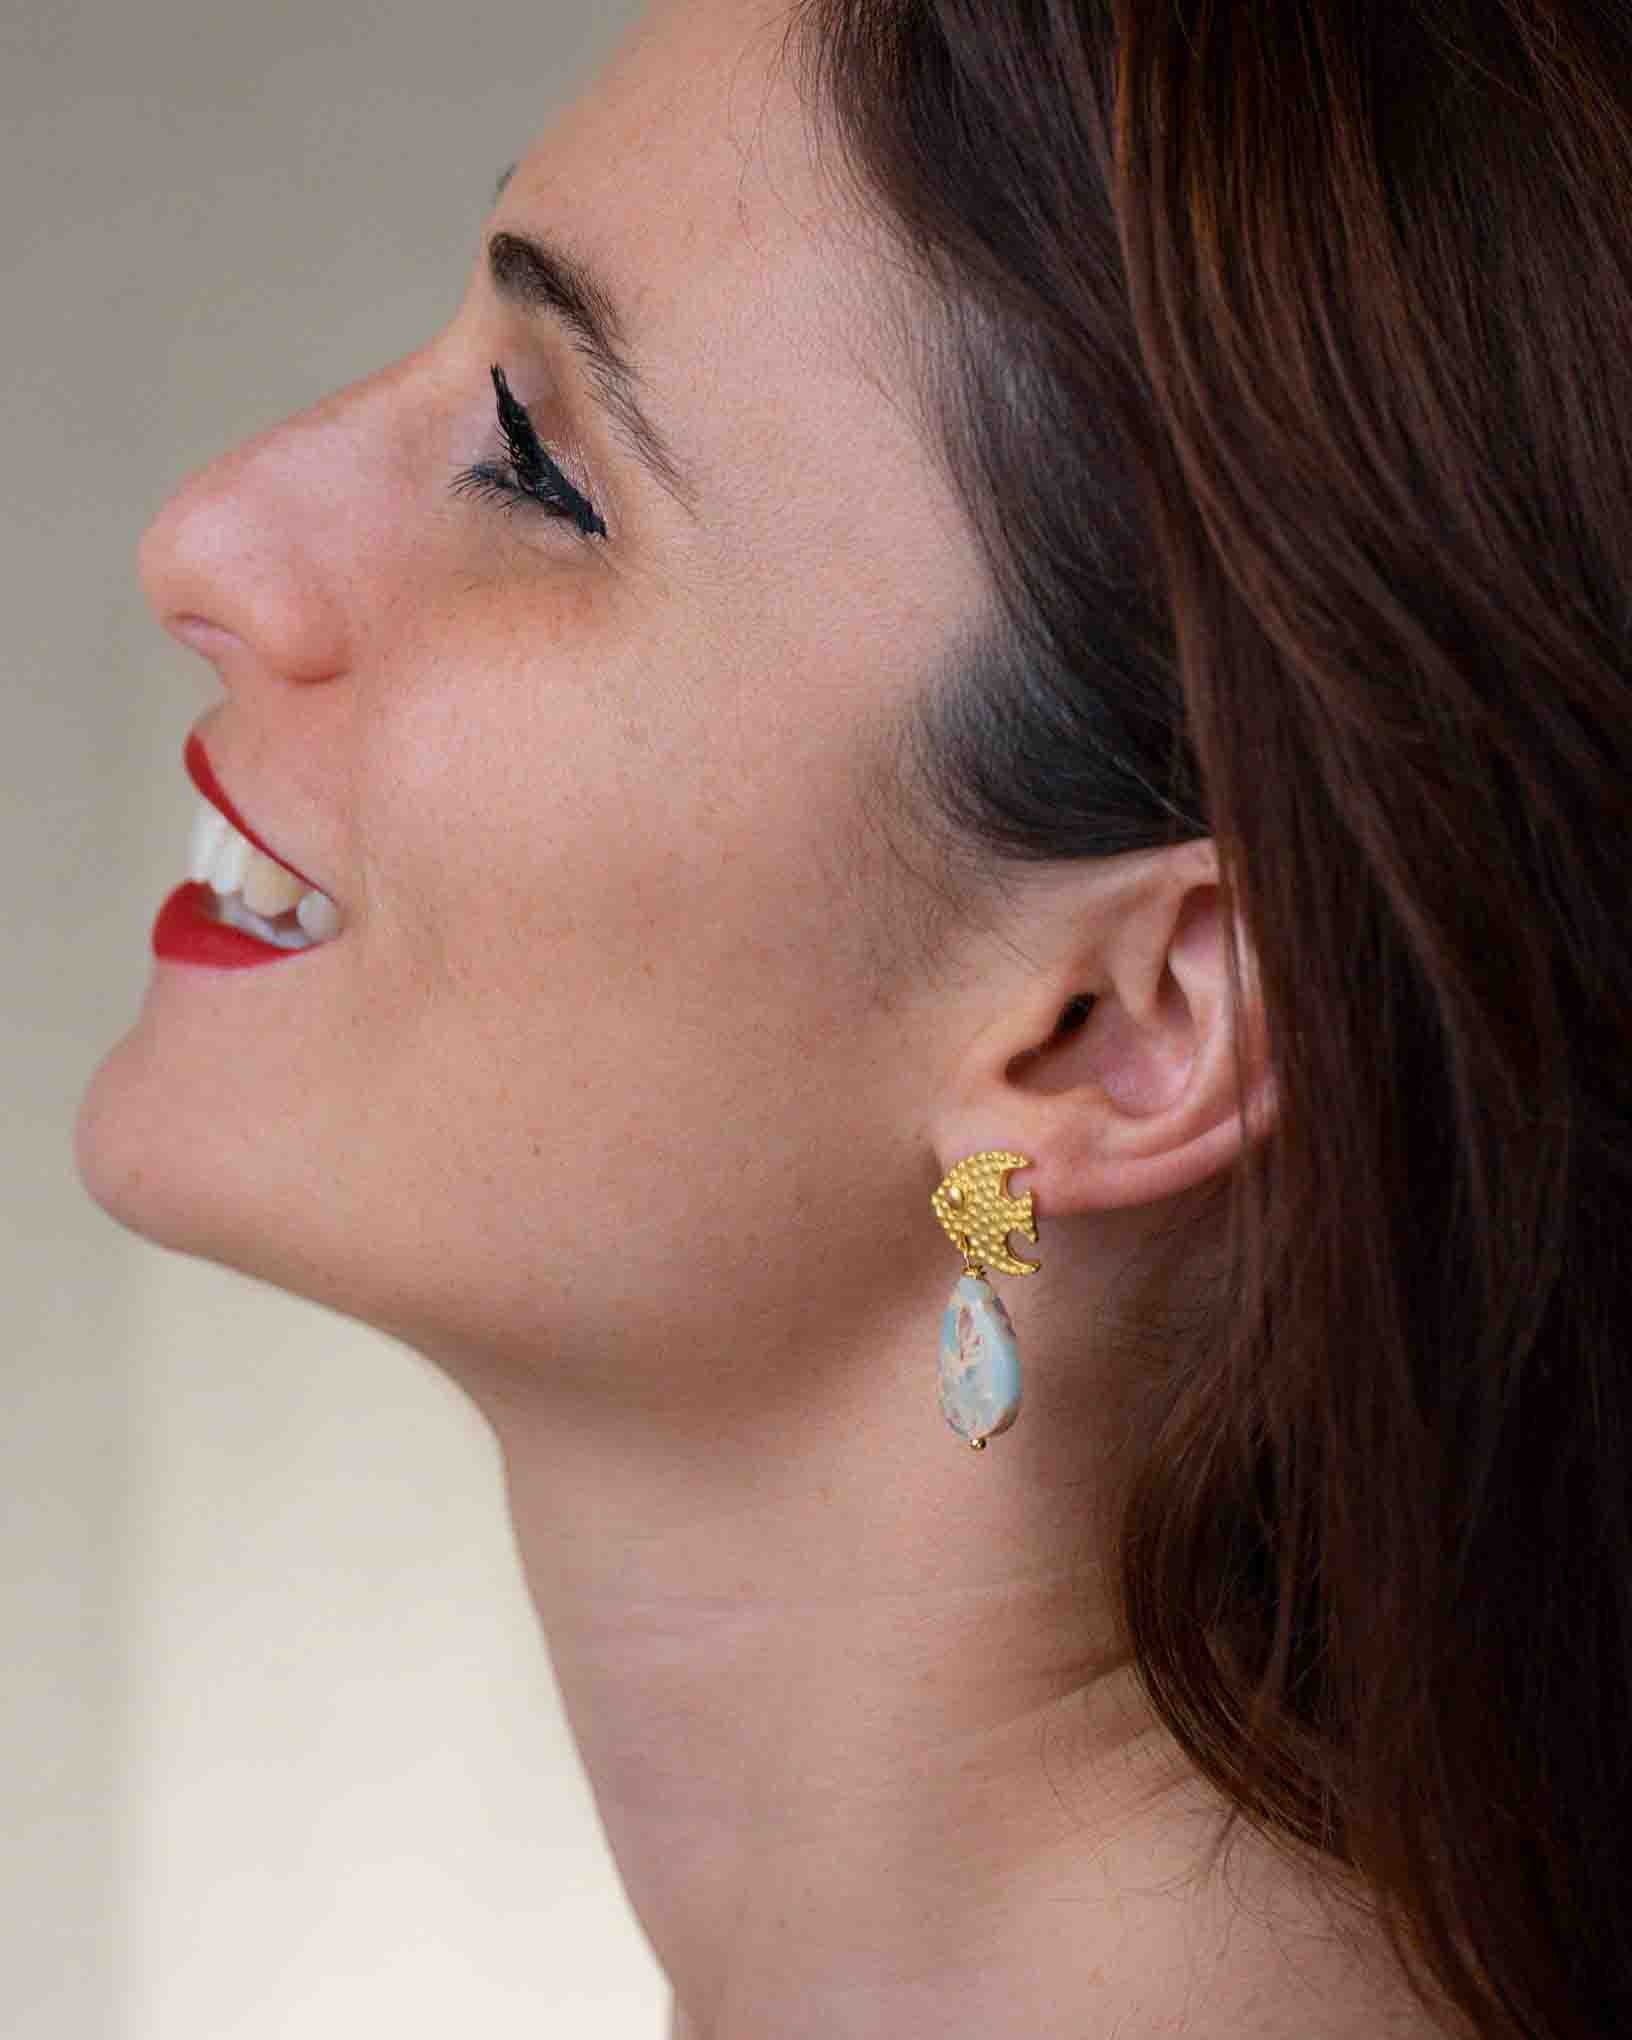 Ohrring Pesce Palla aus der Kollektion I Classici von Donna Rachele Jewelry